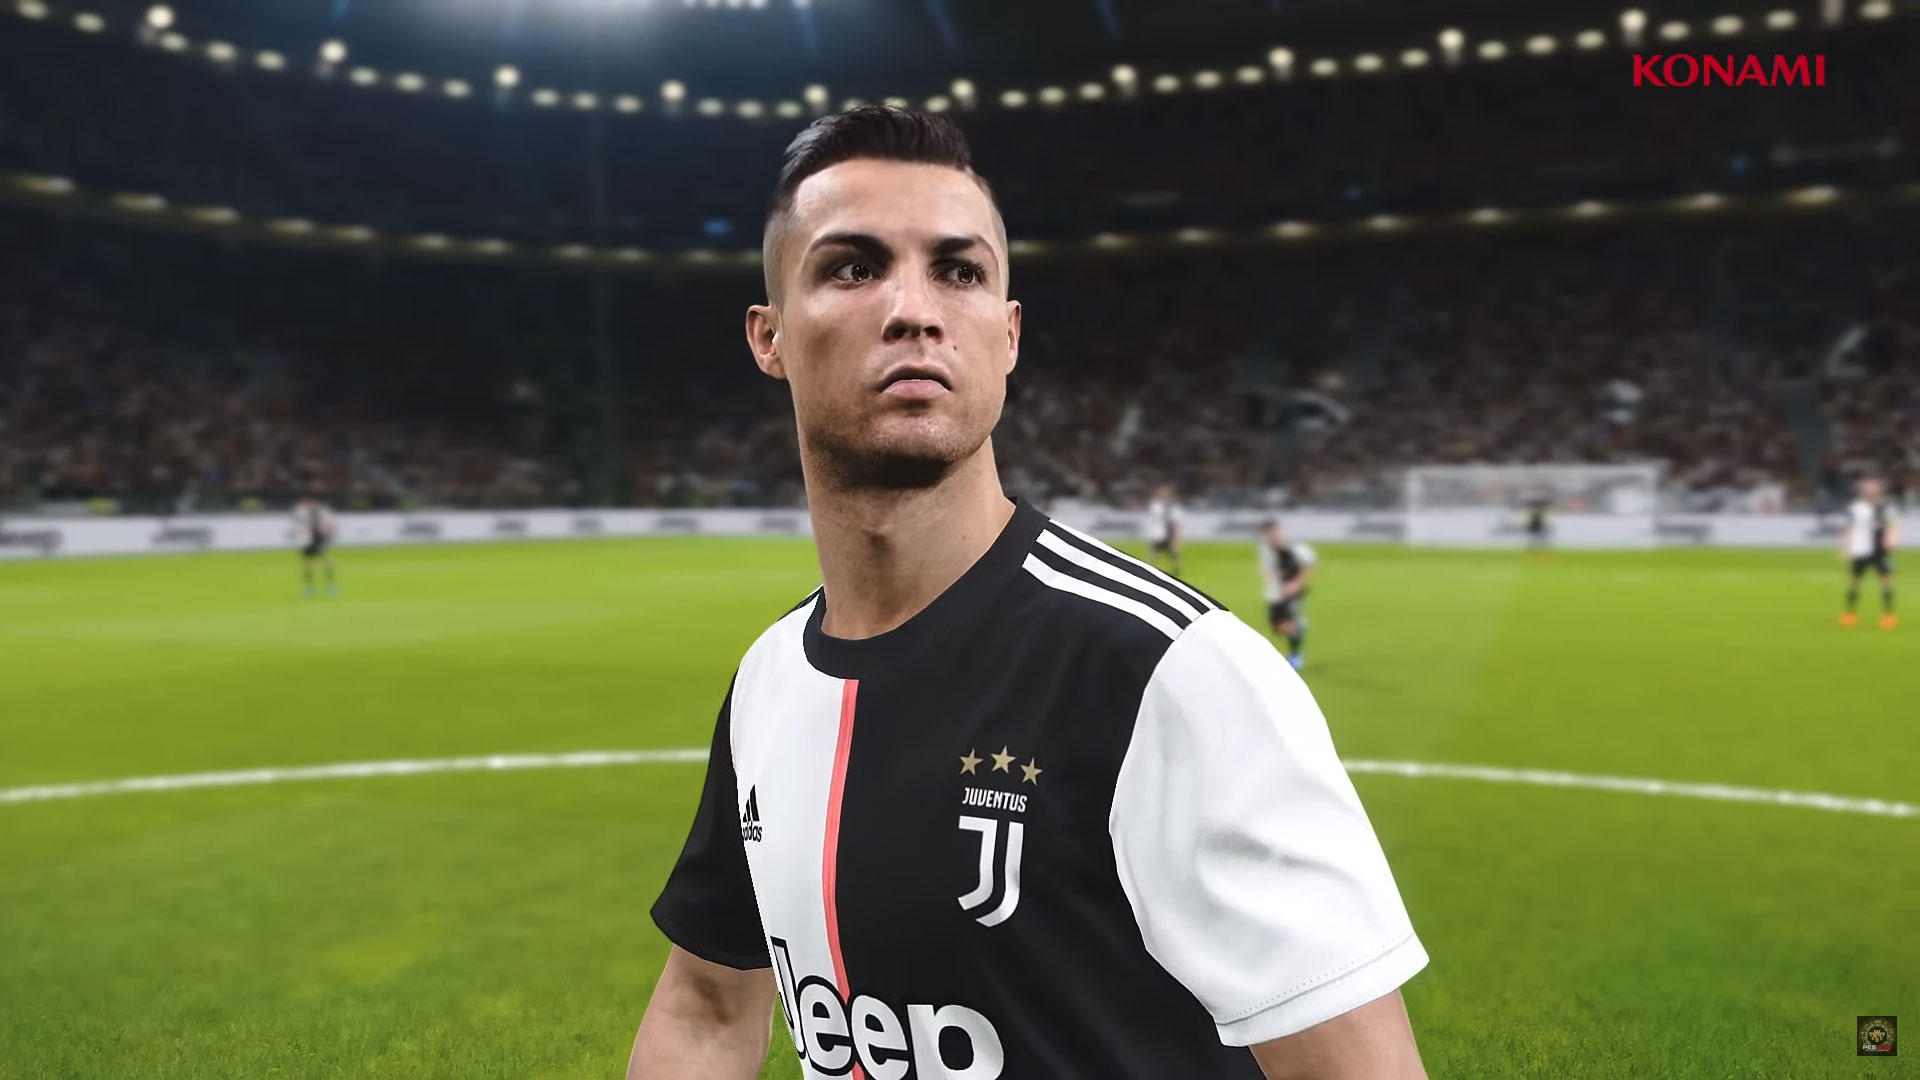 FIFA 20 bez Juventusu. Ronaldo wystąpi w innym klubie